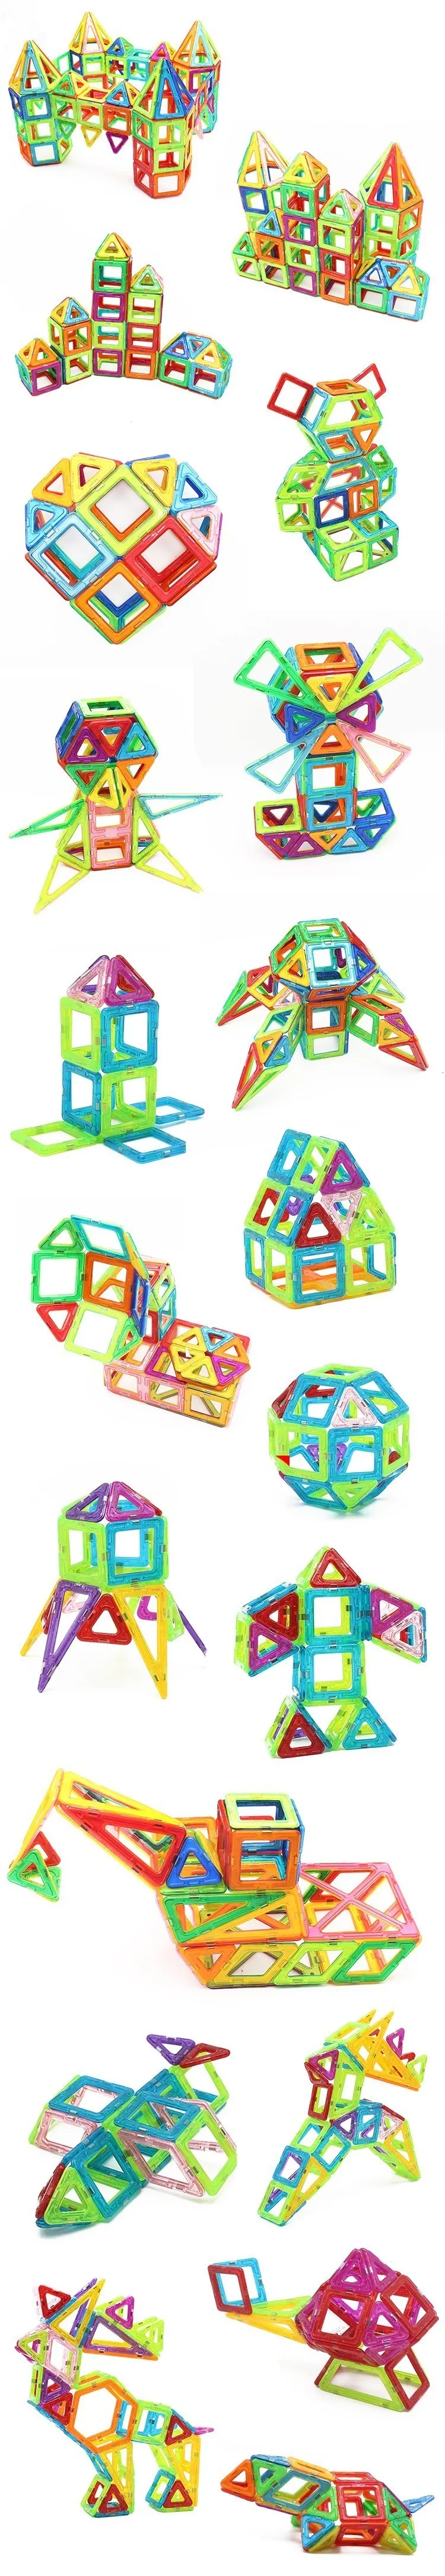 Espeon Unids большой светильник замок кирпичи регулярные образовательные Diy конструктор магнитные строительные блоки игрушки для детей